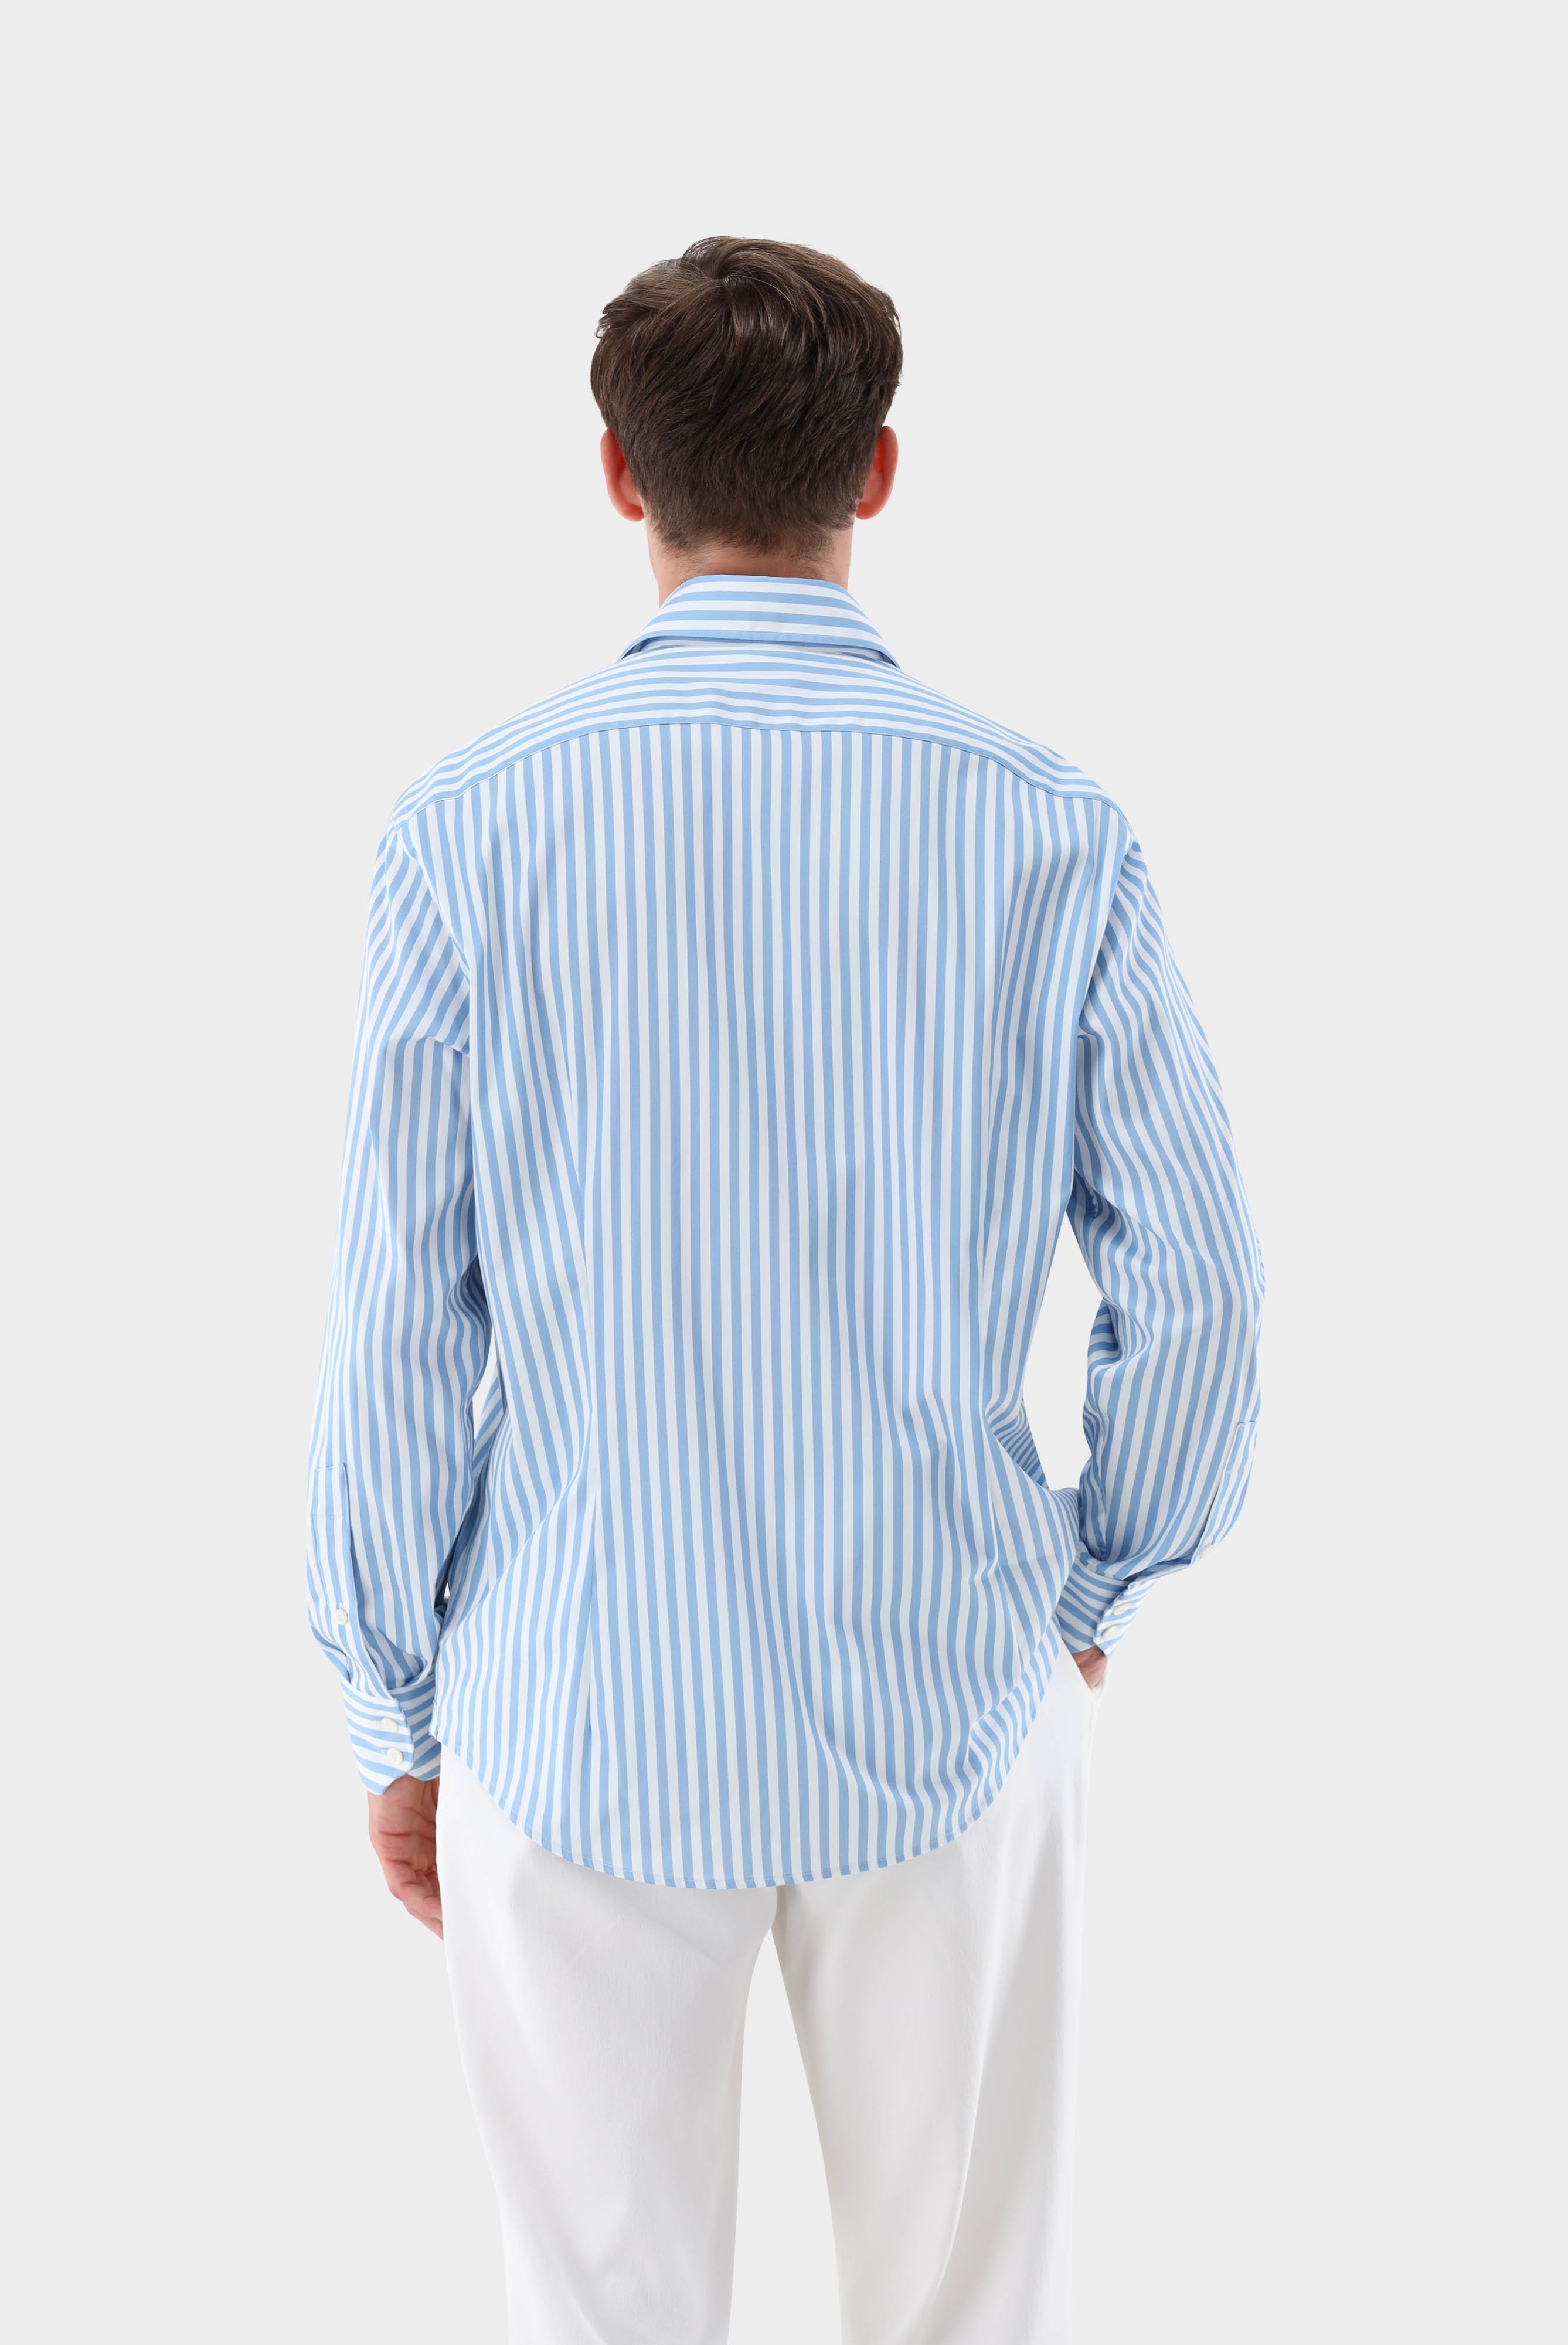 Casual Hemden+Gestreiftes Hemd aus Baumwollstretch Tailor Fit+20.3283.NV.171959.720.38